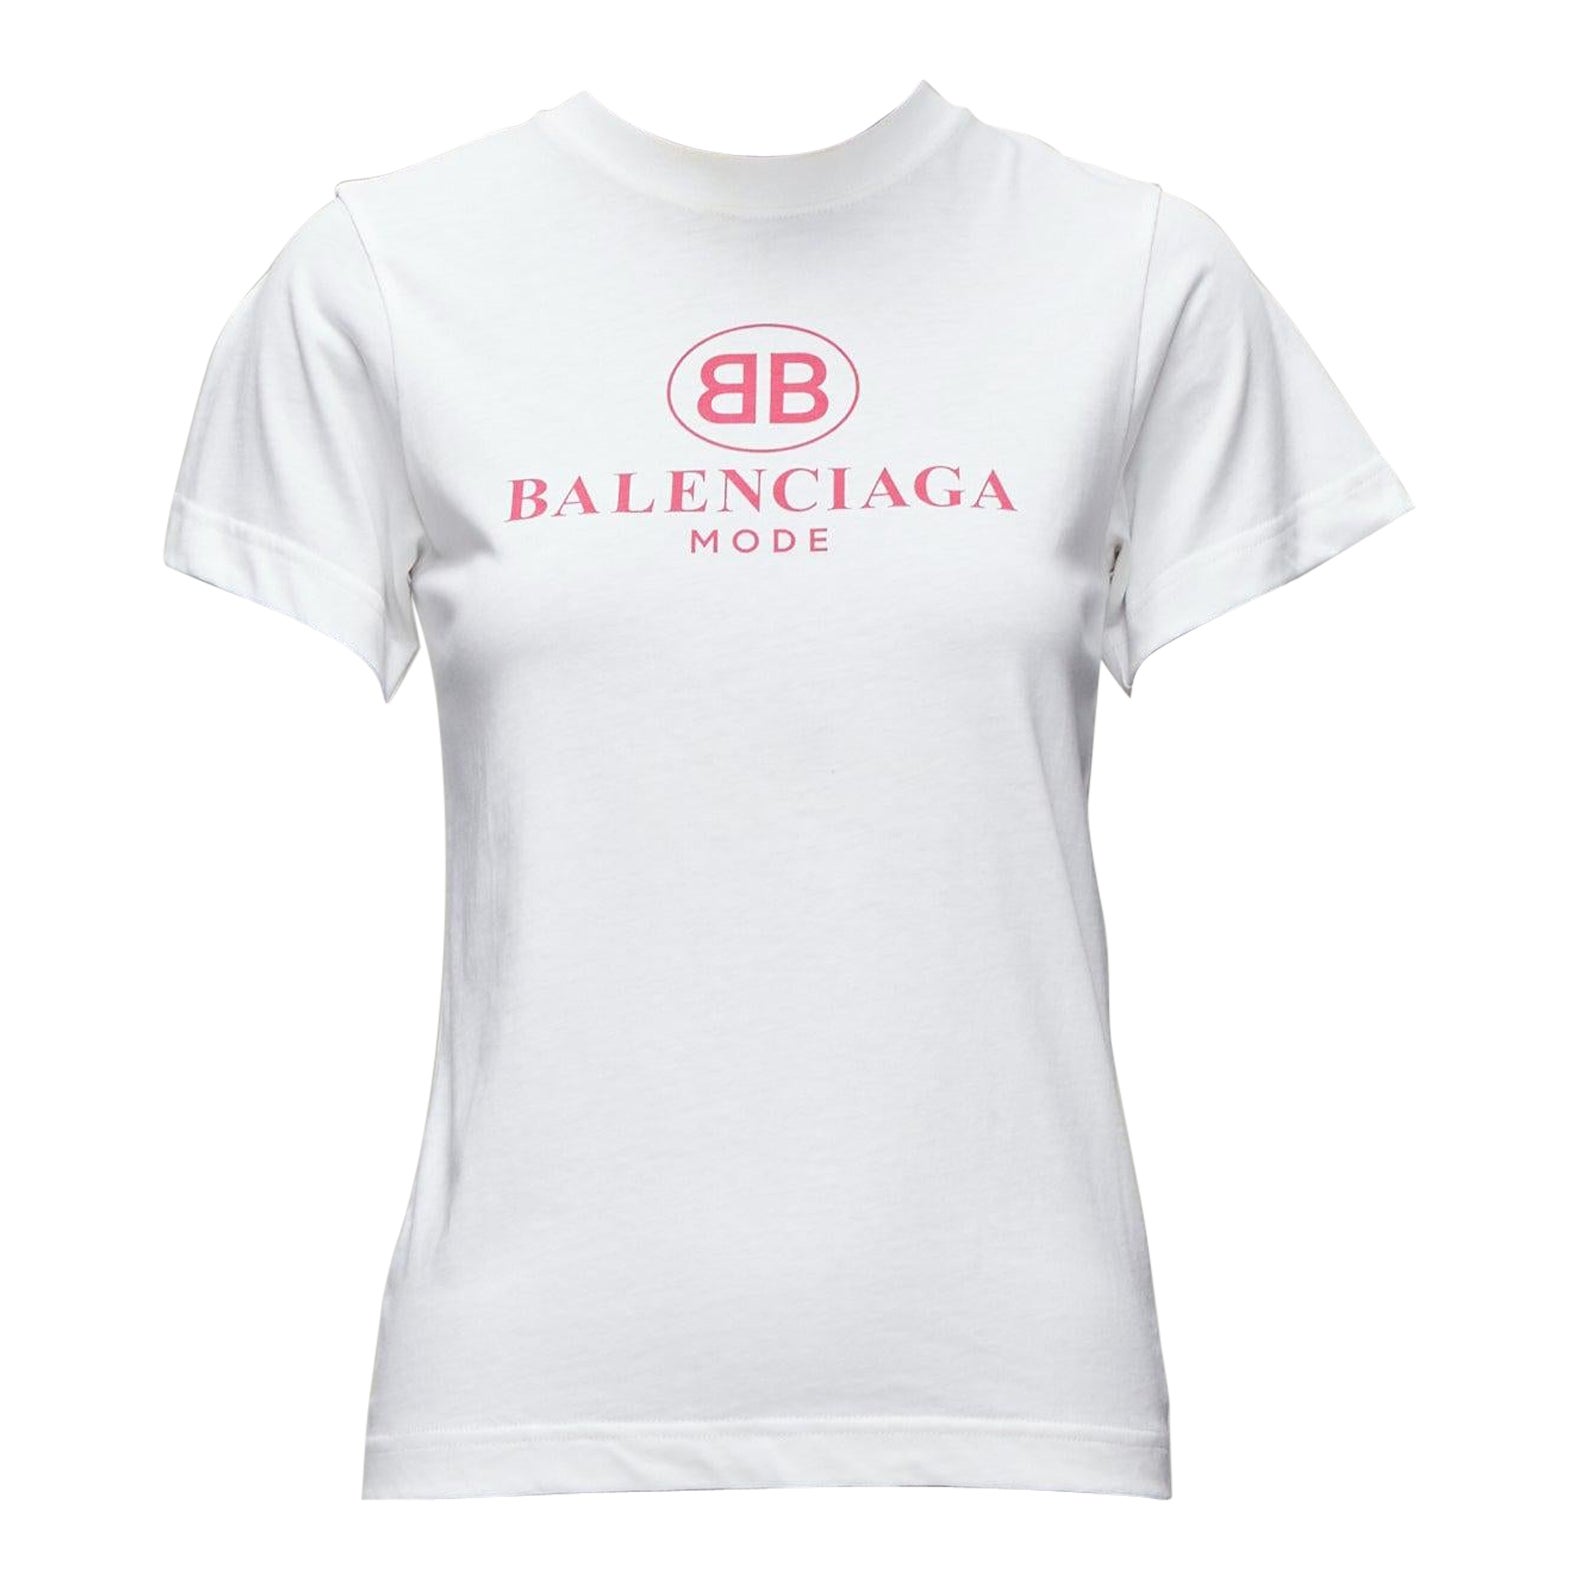 Do Balenciaga shirts fit true to size?